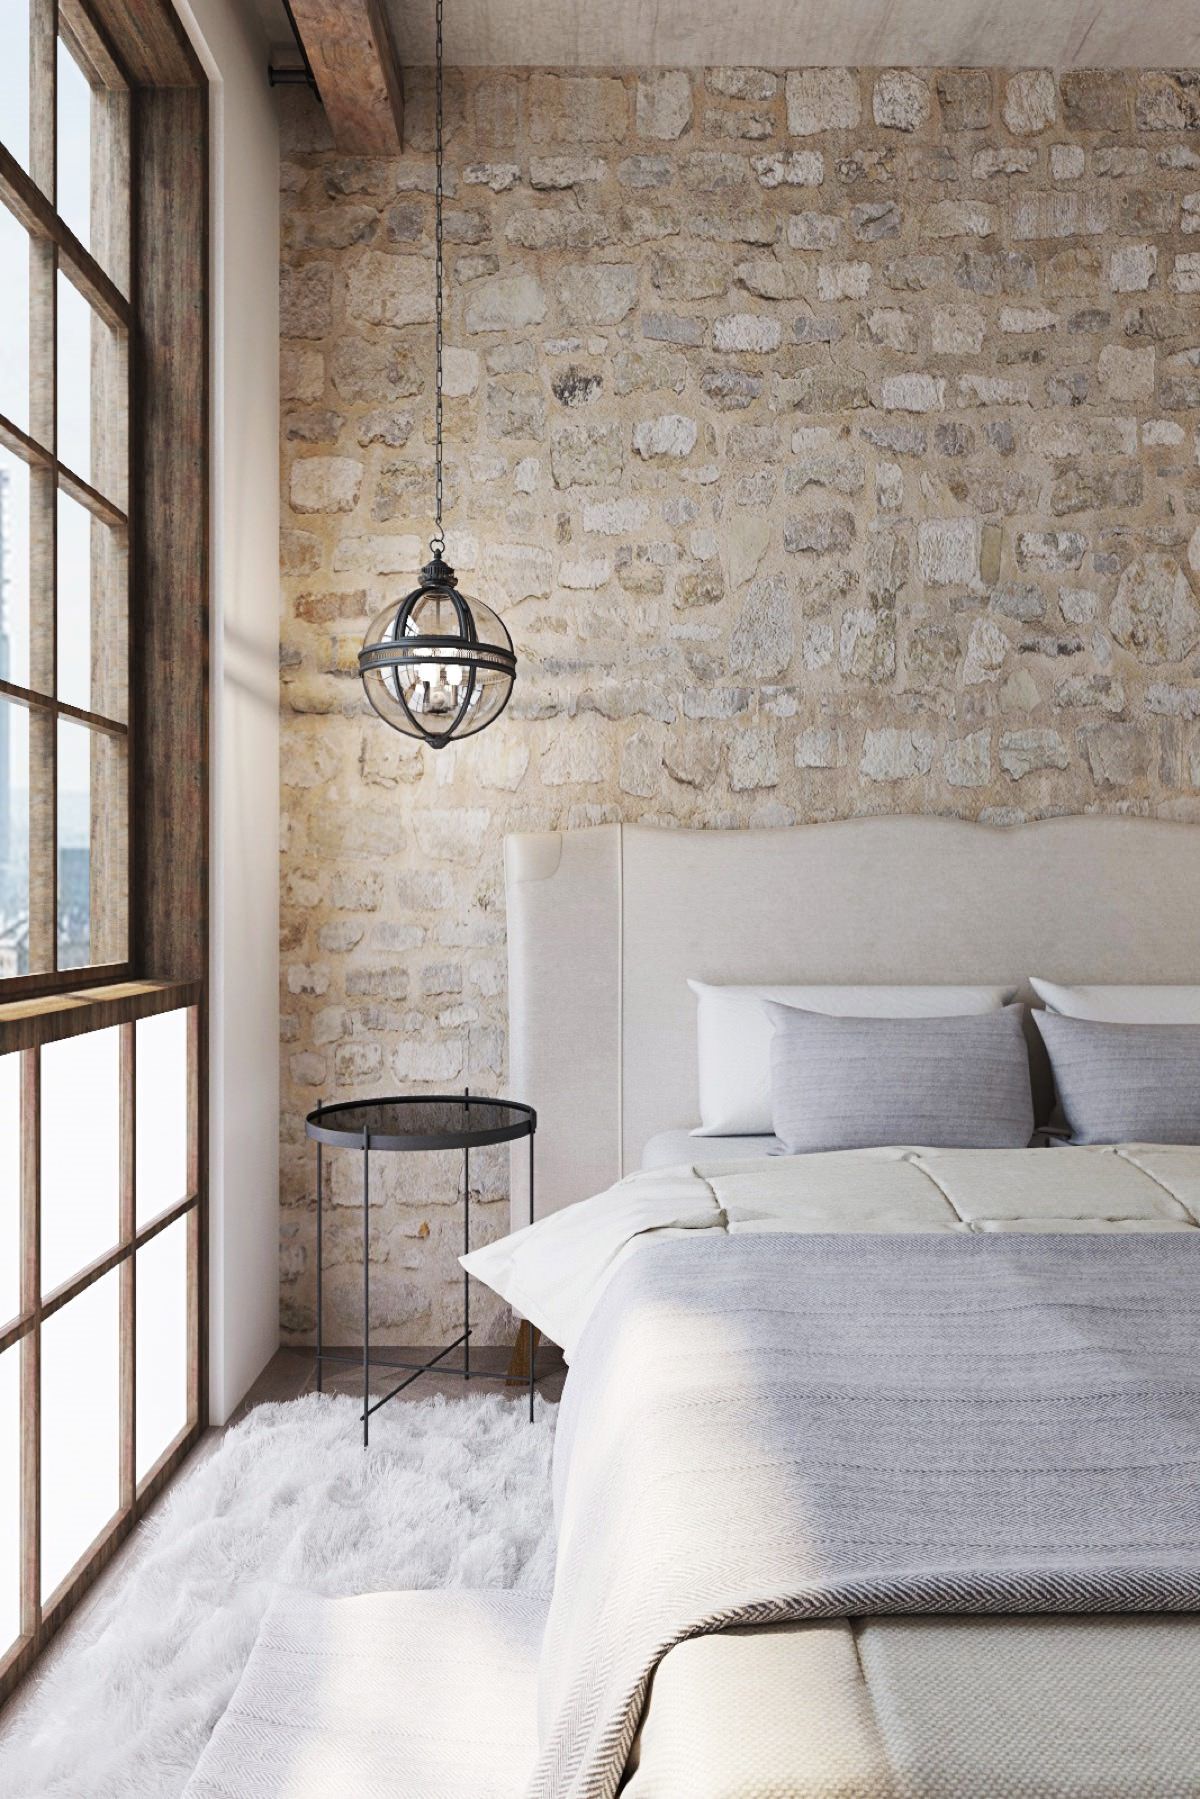 طراحی و دکوراسیون داخلی اتاق خواب شیک و ساده ای که از بافت سنگی به عنوان دیوار تاکیدی در آن استفاده شده است